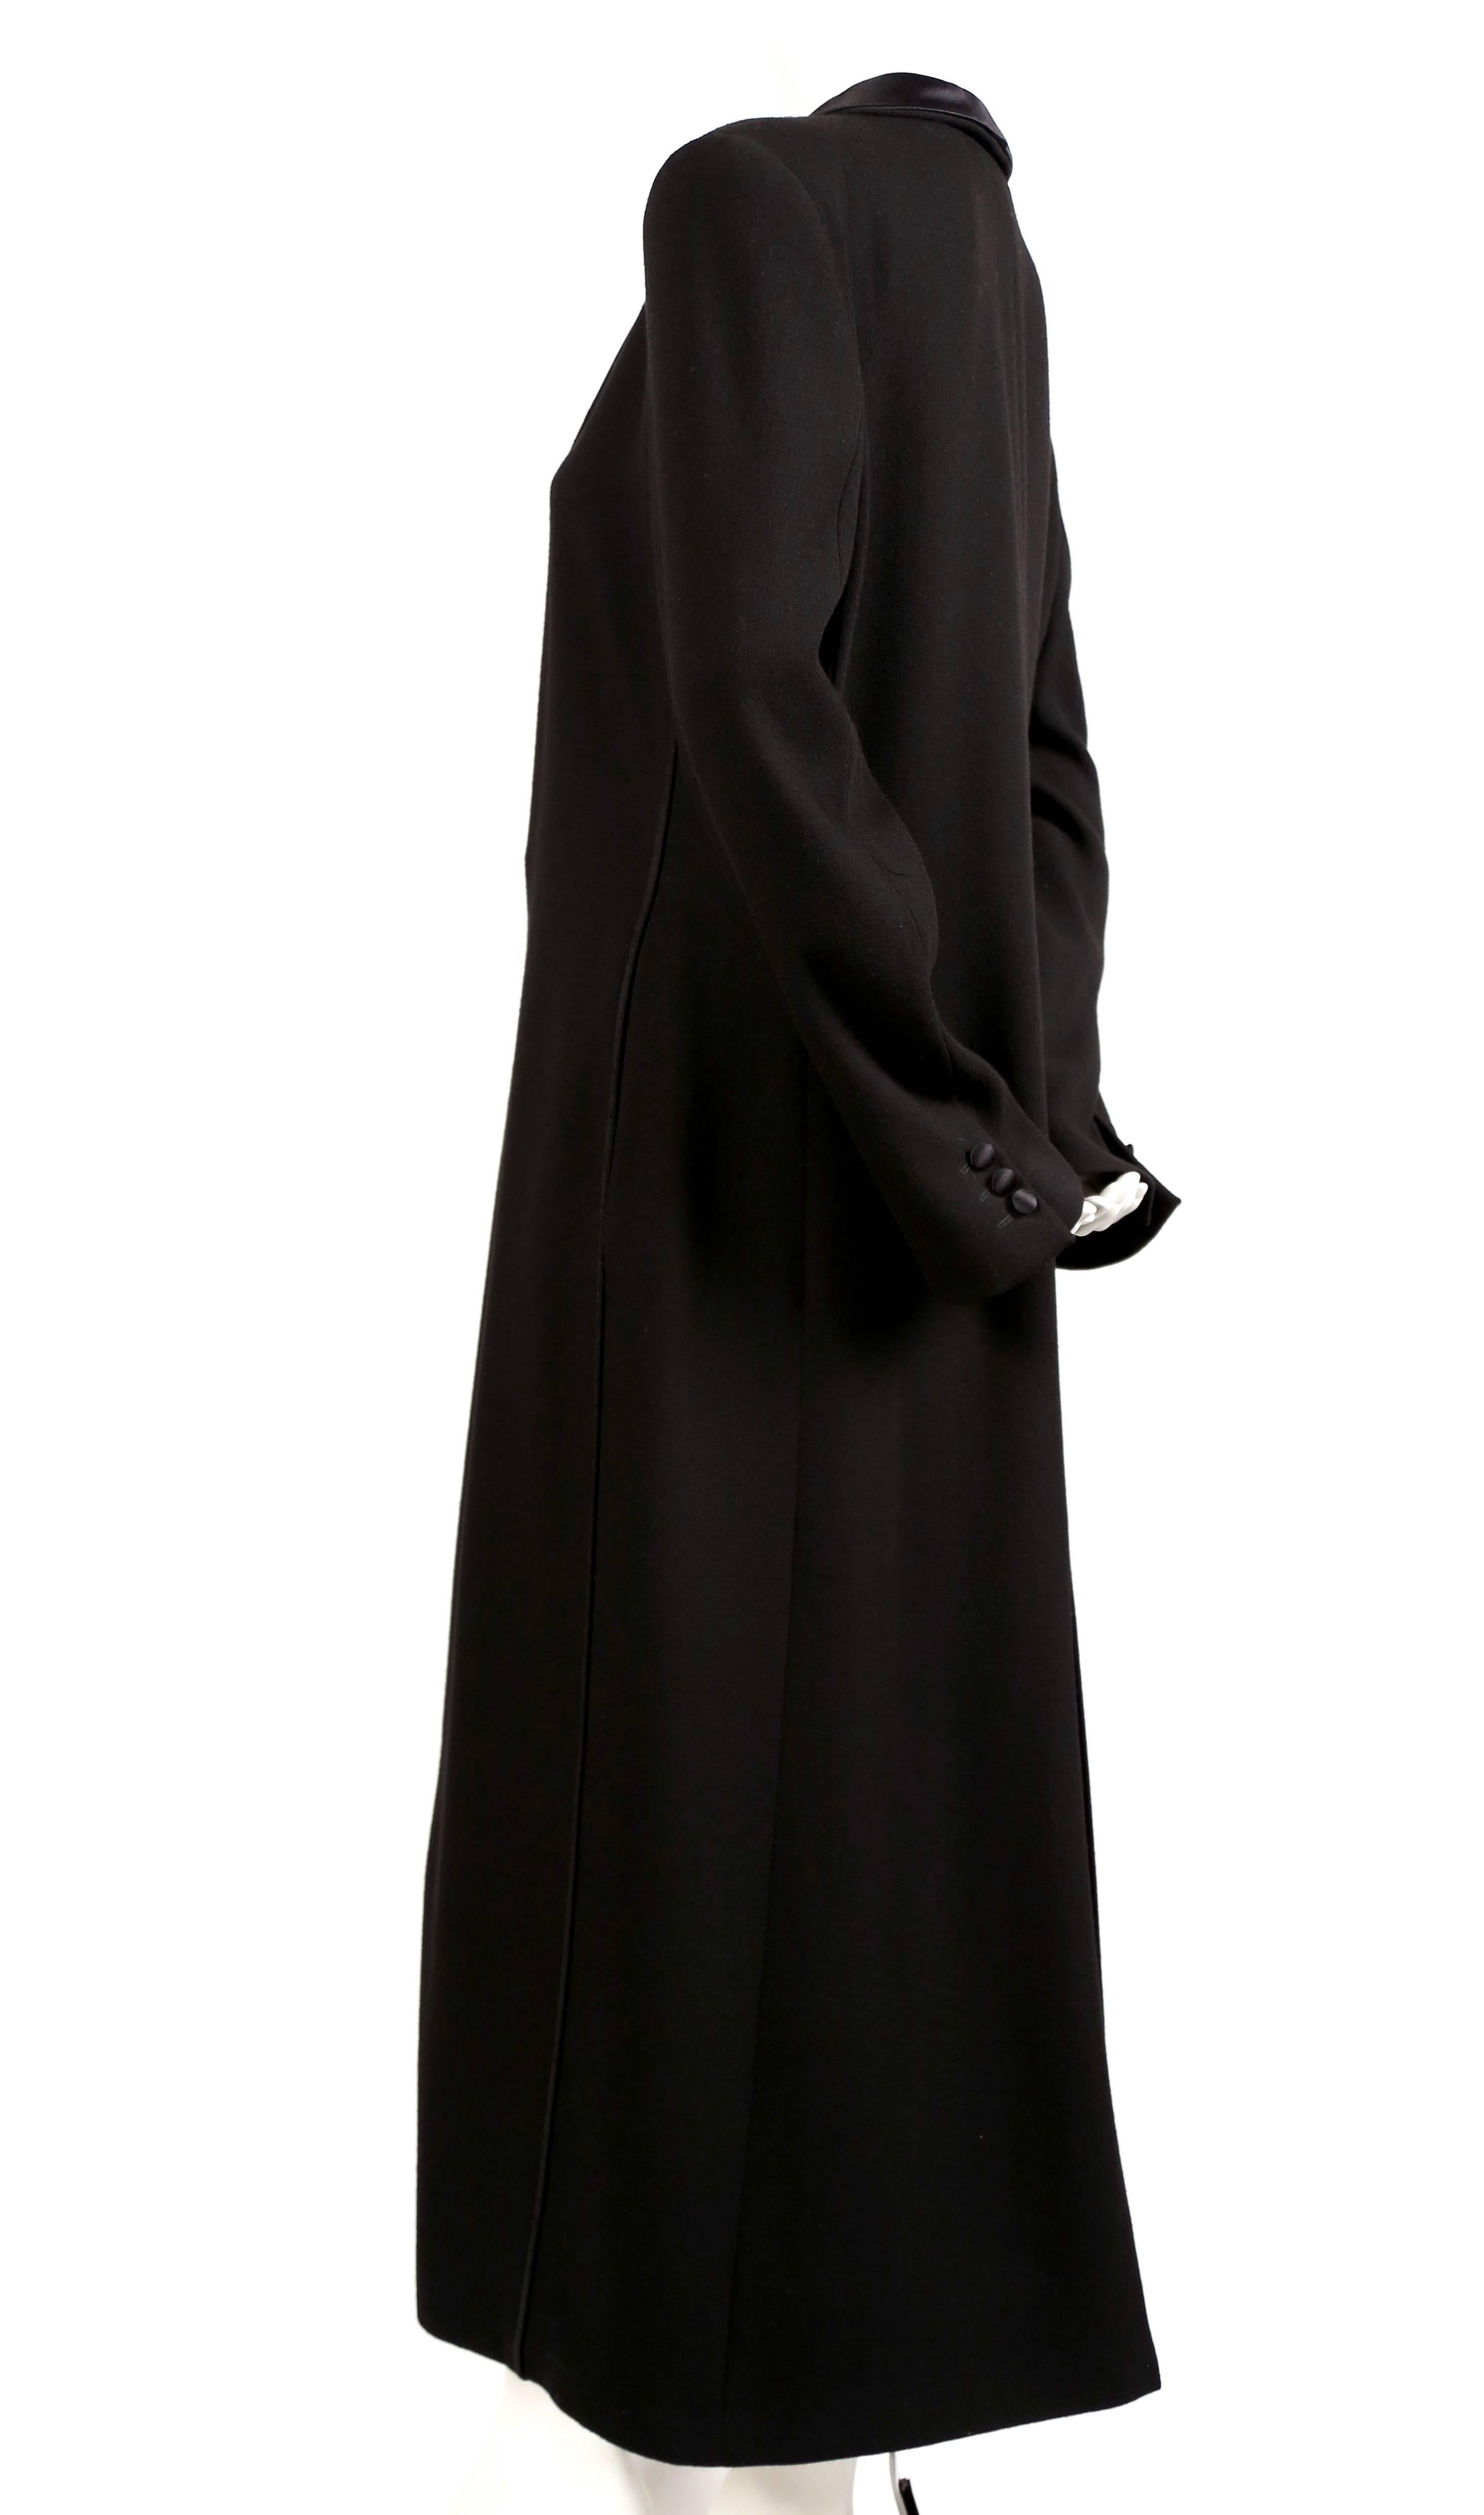 Manteau de smoking en laine noire de jais avec garnitures en satin et en Corde, conçu par Giorgio Armani et datant des années 1990. Taille italienne 42. Mesures approximatives : épaule 18